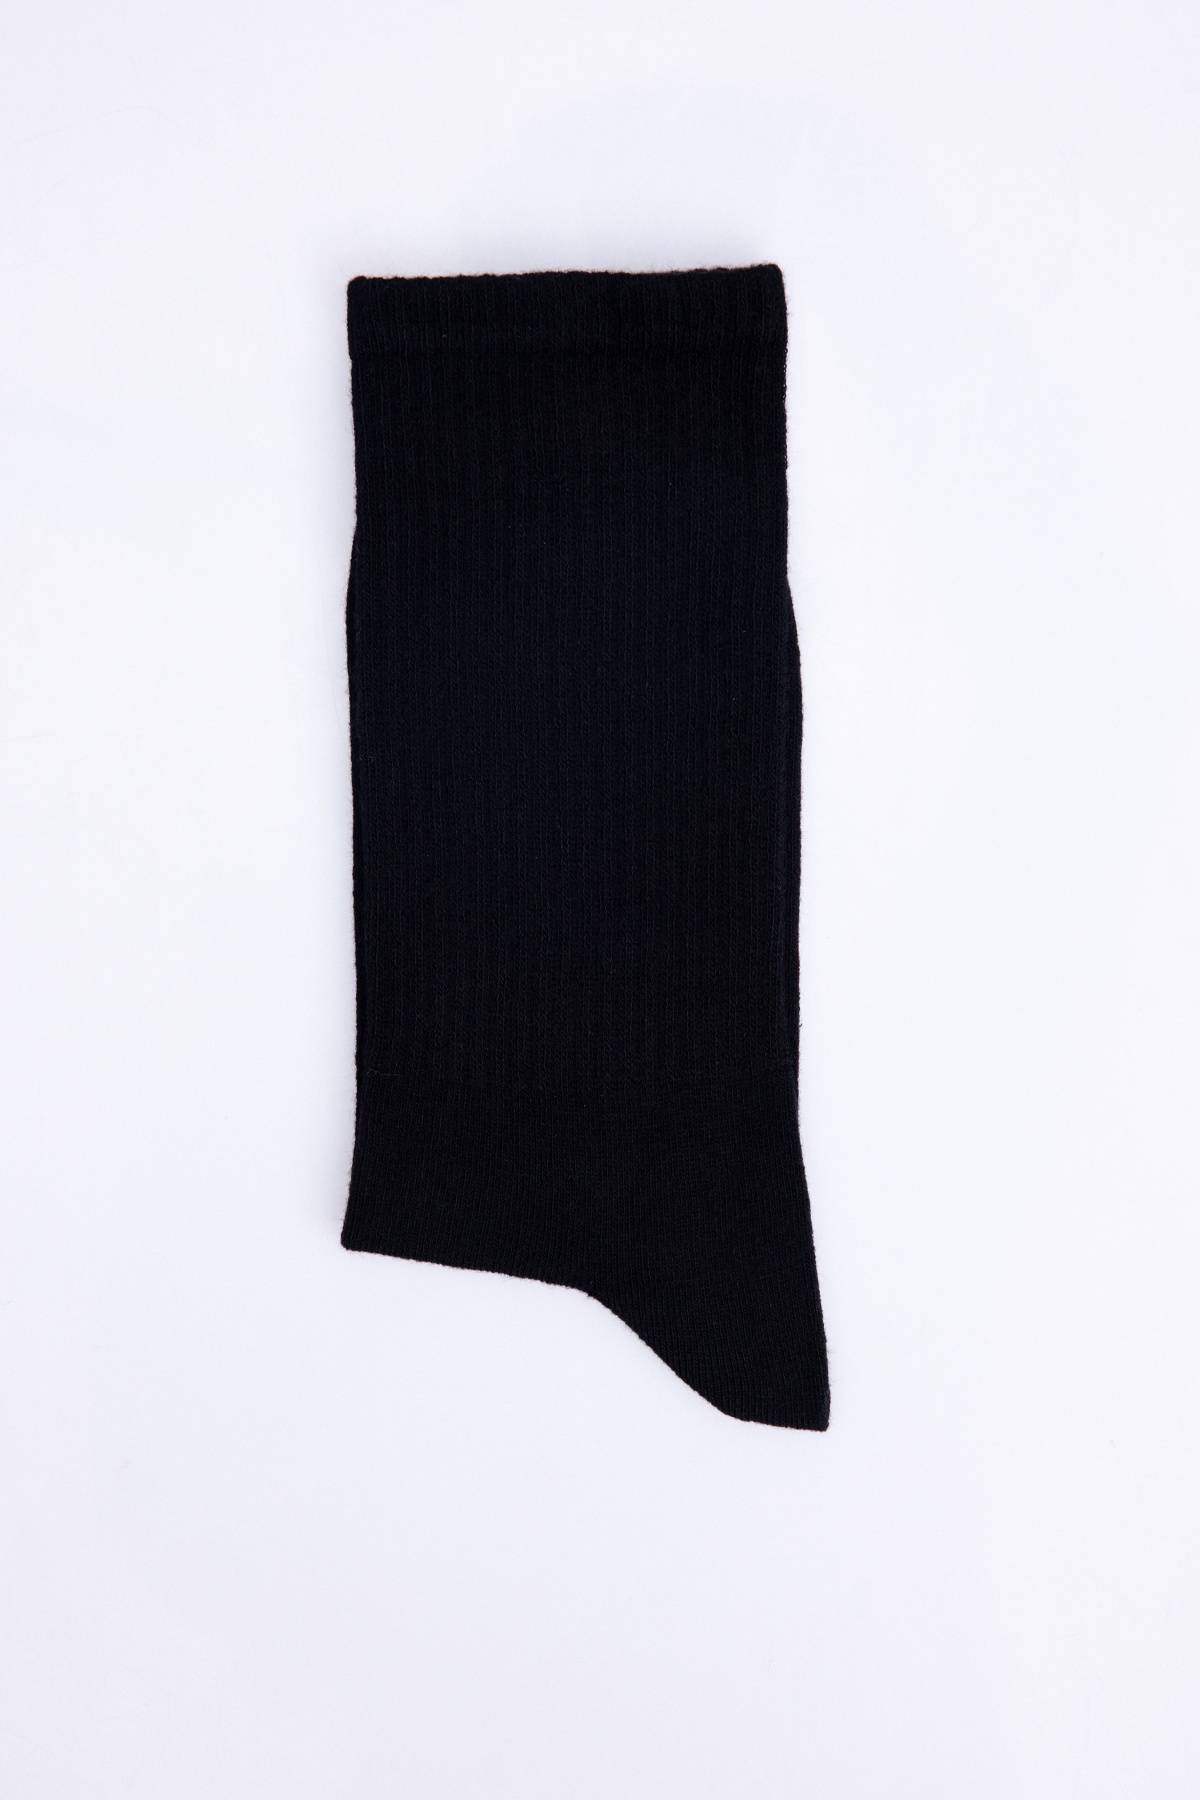 Knitted Black Socks